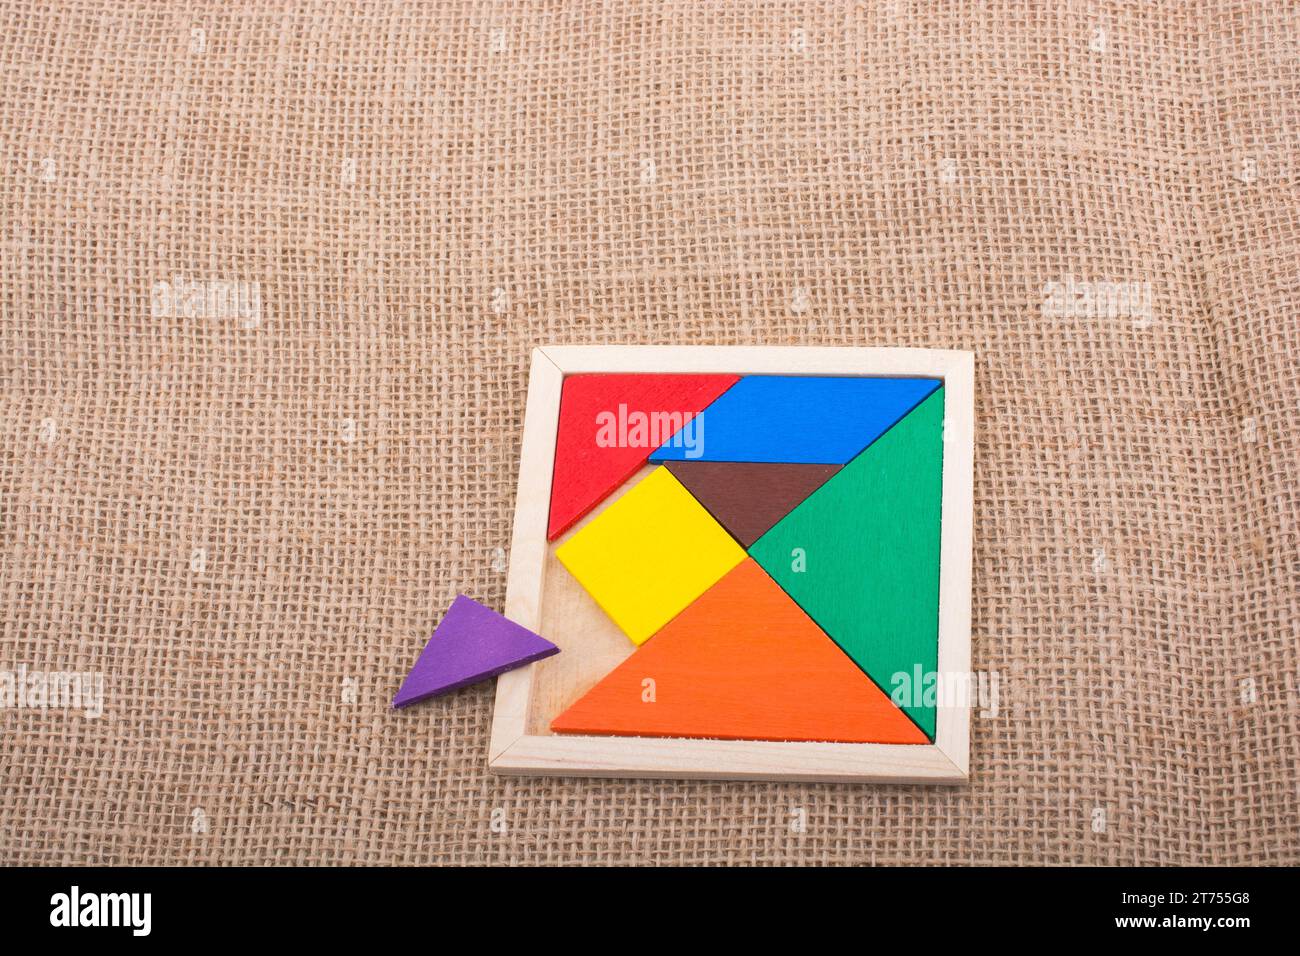 The puzzle game 'Genius Square' Stock Photo - Alamy